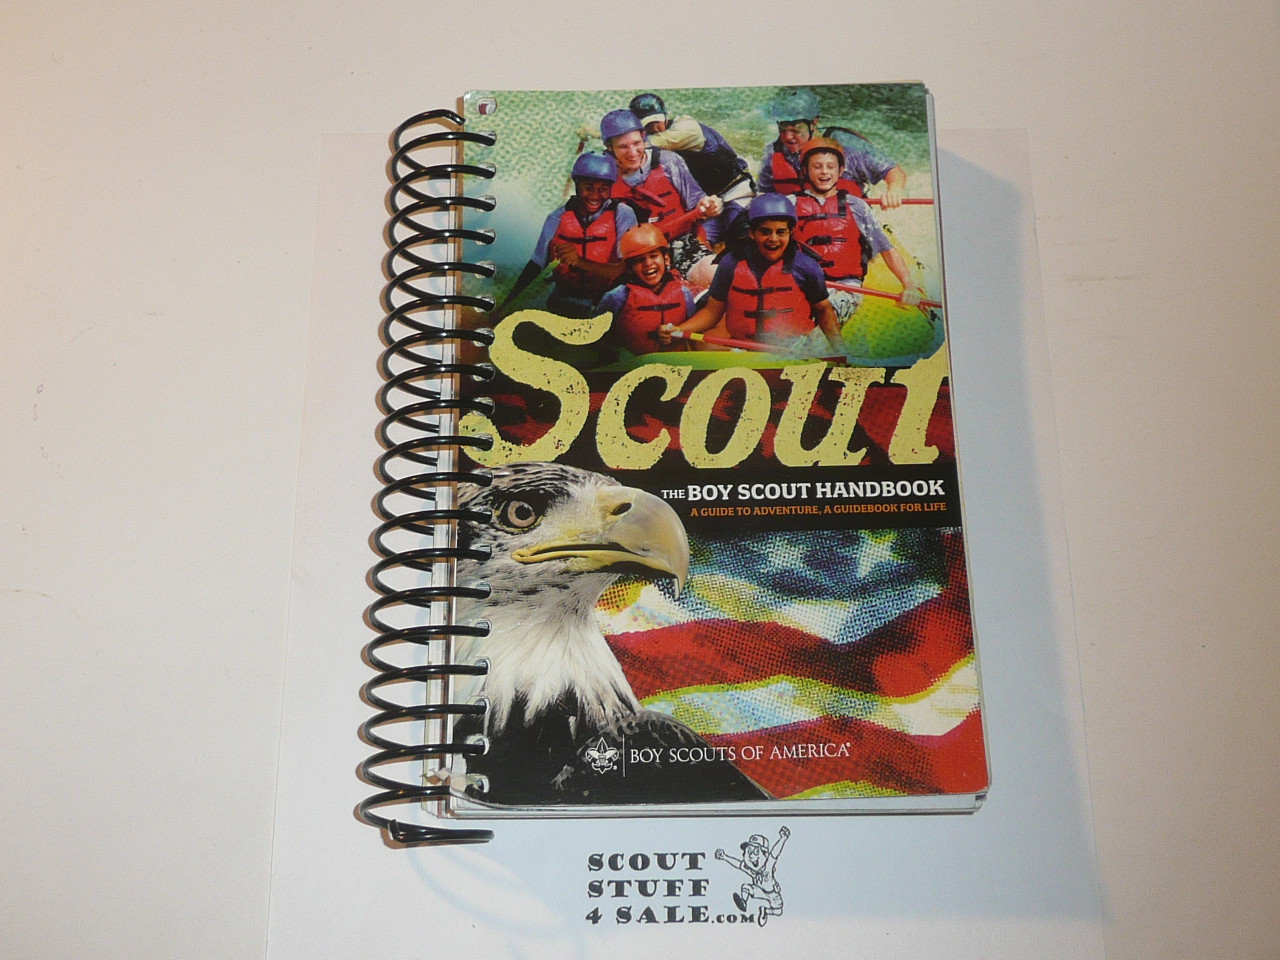 2009 Boy Scout Handbook, Twelfth Edition, Spiral Bound, 2009 Printing, MINT condition